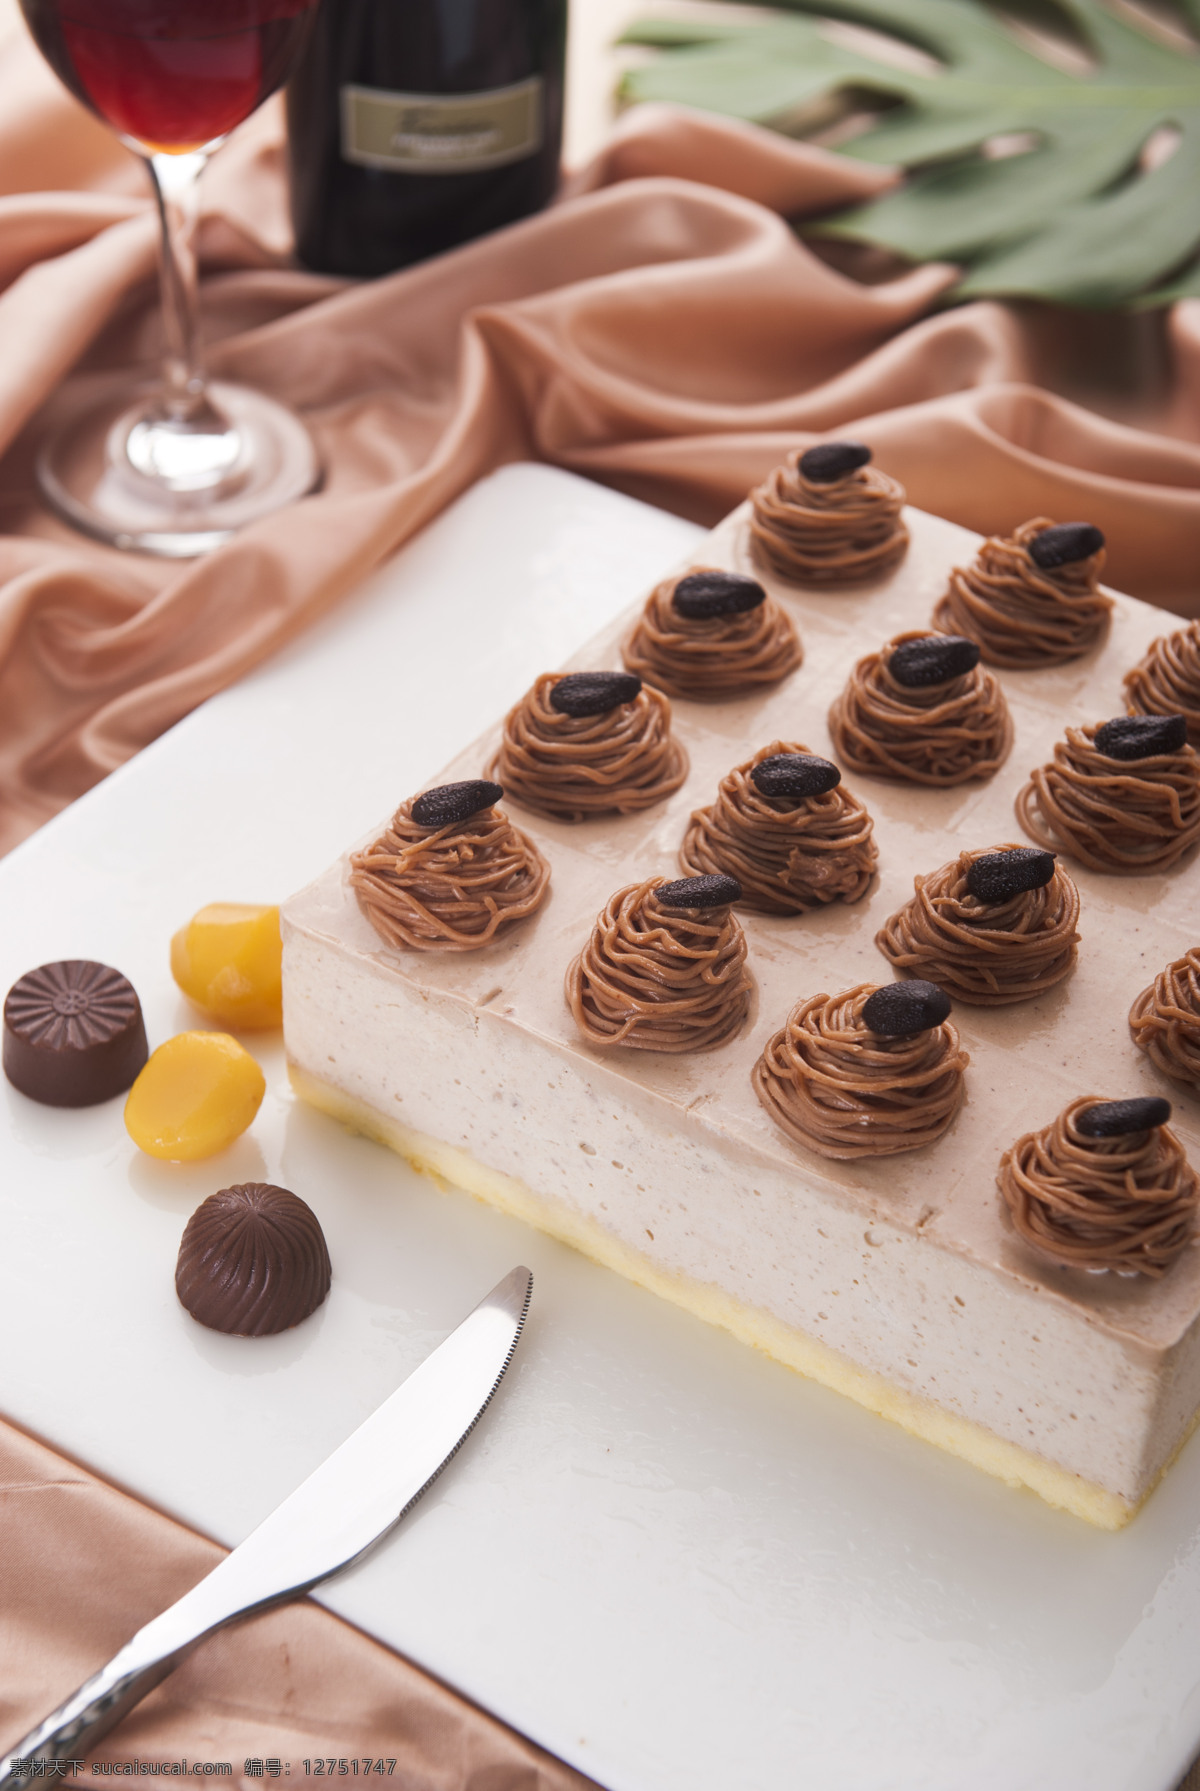 奥地栗蛋糕 栗蓉 巧克力 方形蛋糕 榛果蛋糕 餐饮美食 西餐美食